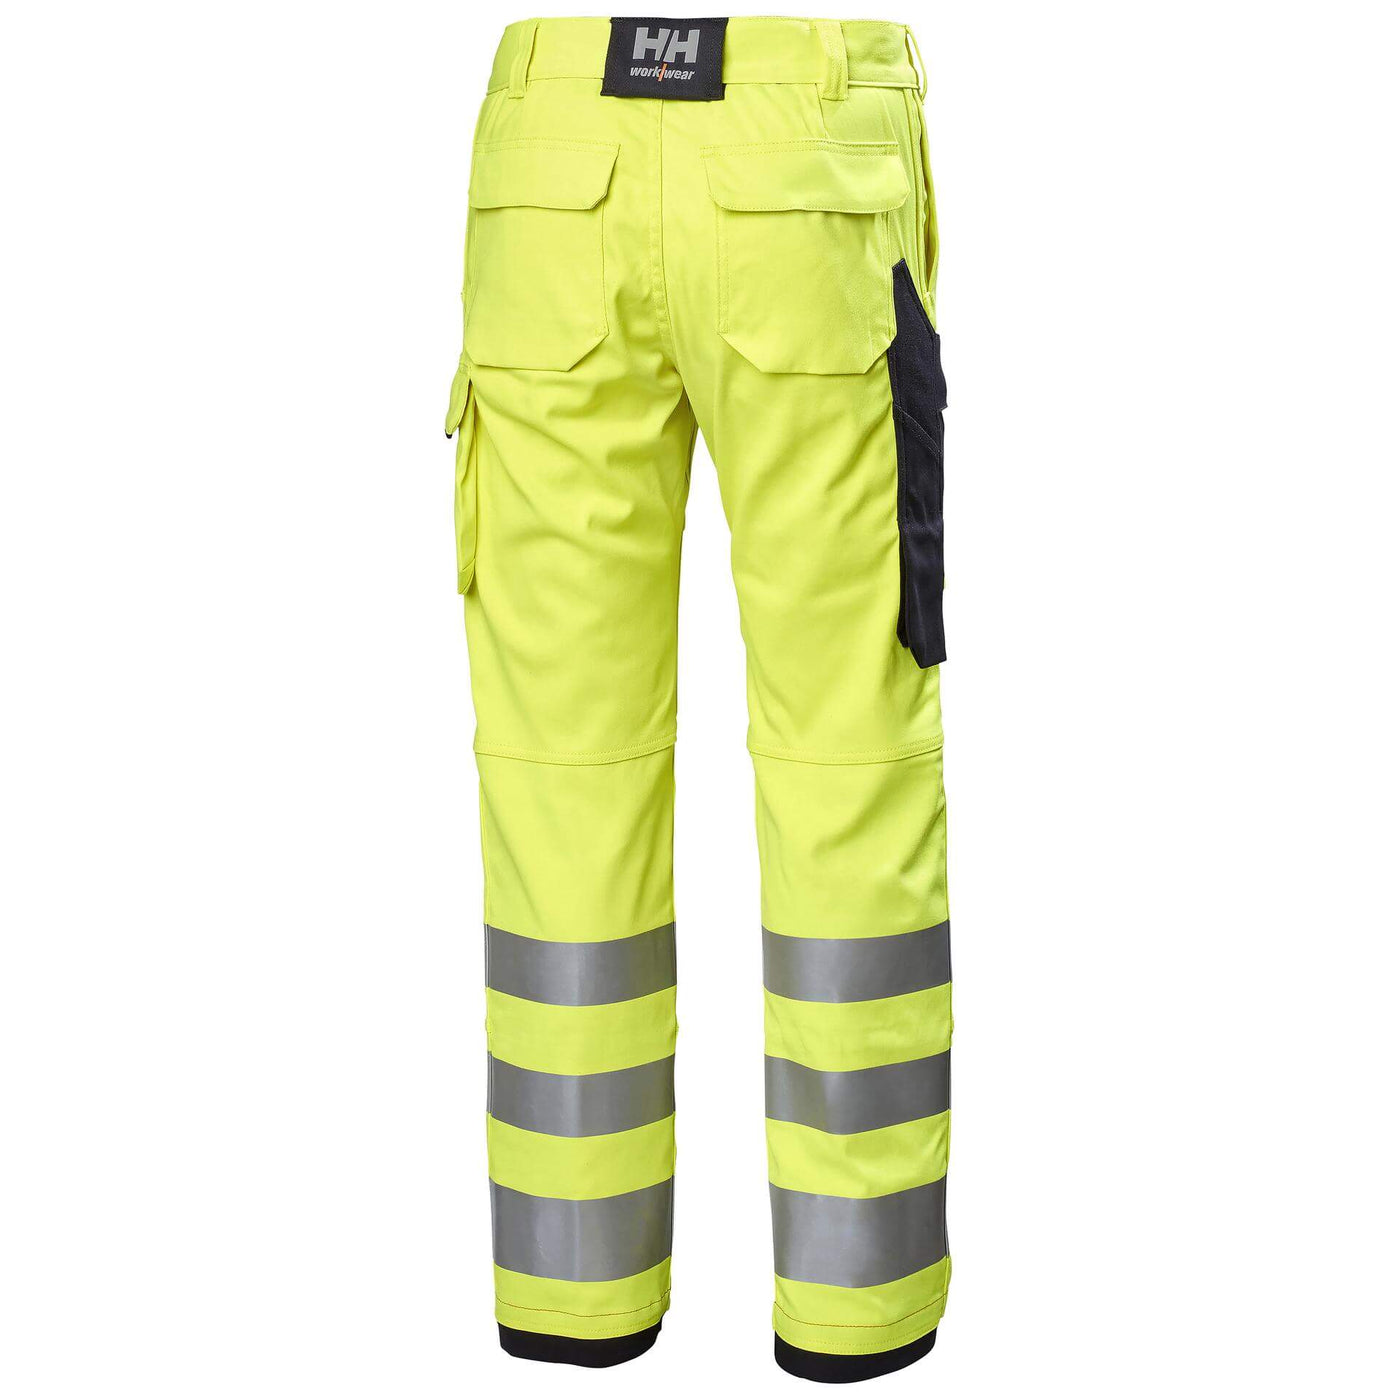 Helly Hansen Fyre Hi Vis FR Work Trousers Class 2 Hi Vis Yellow/Ebony 2 Rear #colour_hi-vis-yellow-ebony